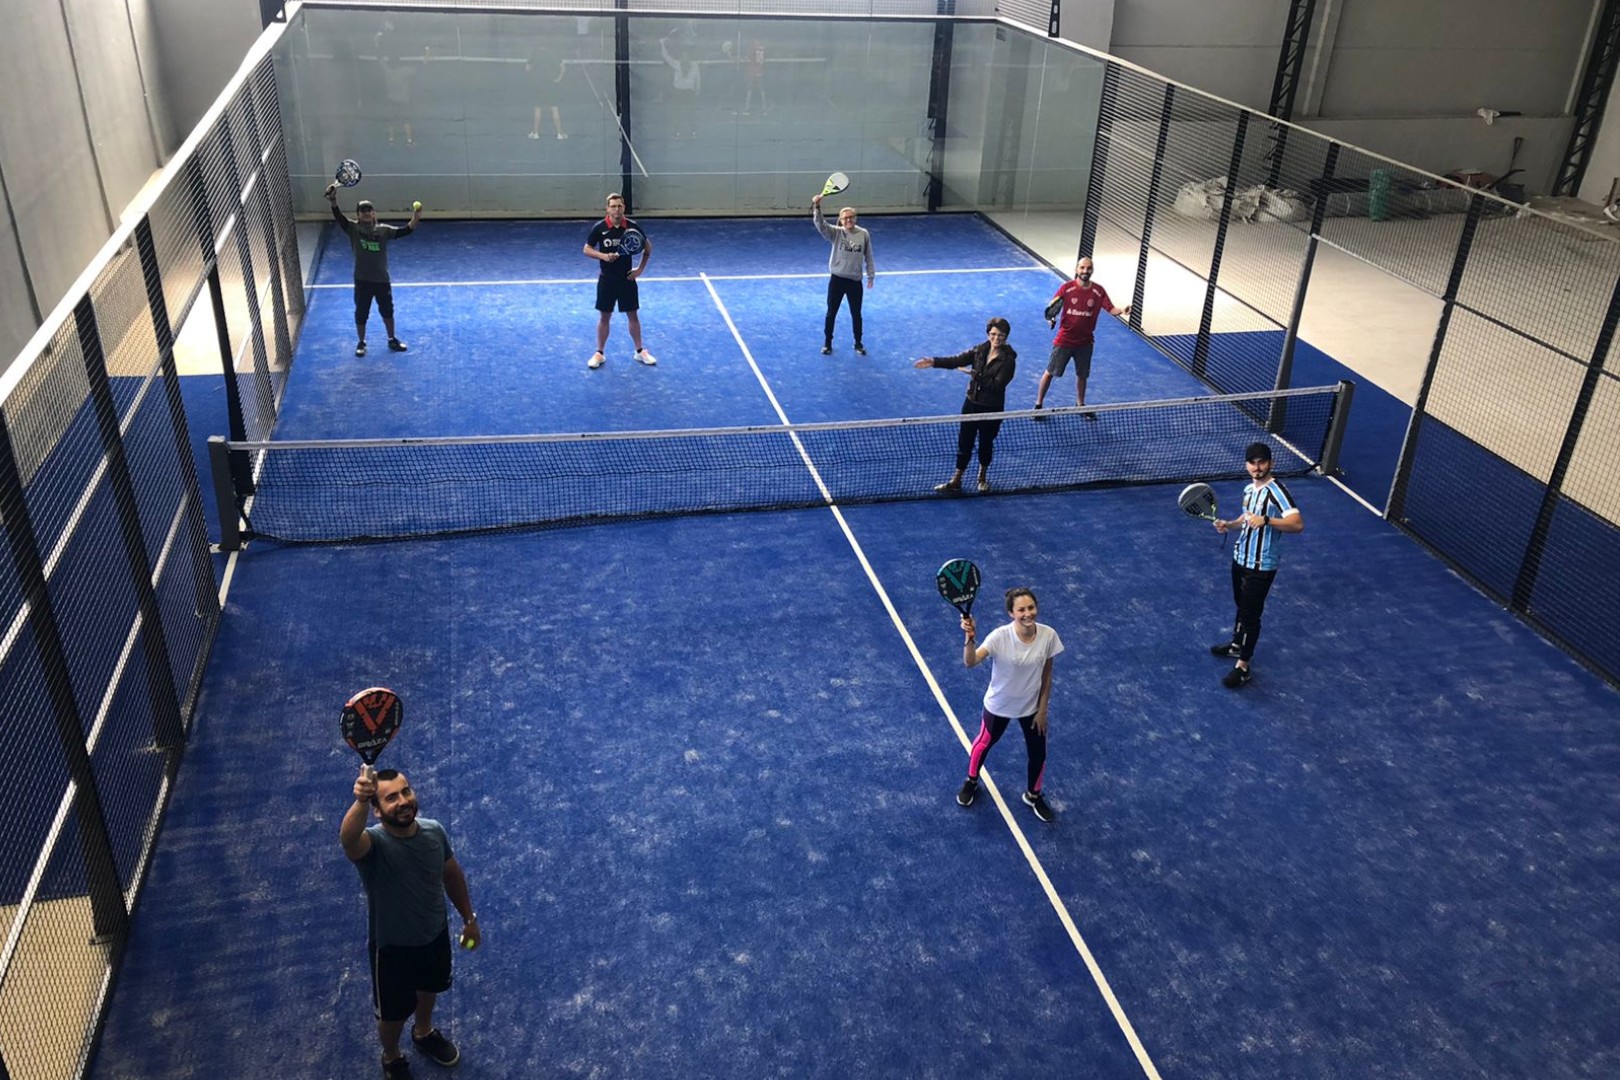  Oficinas de padel e beach tennis oferecem novas oportunidades de formação acadêmica e profissional  